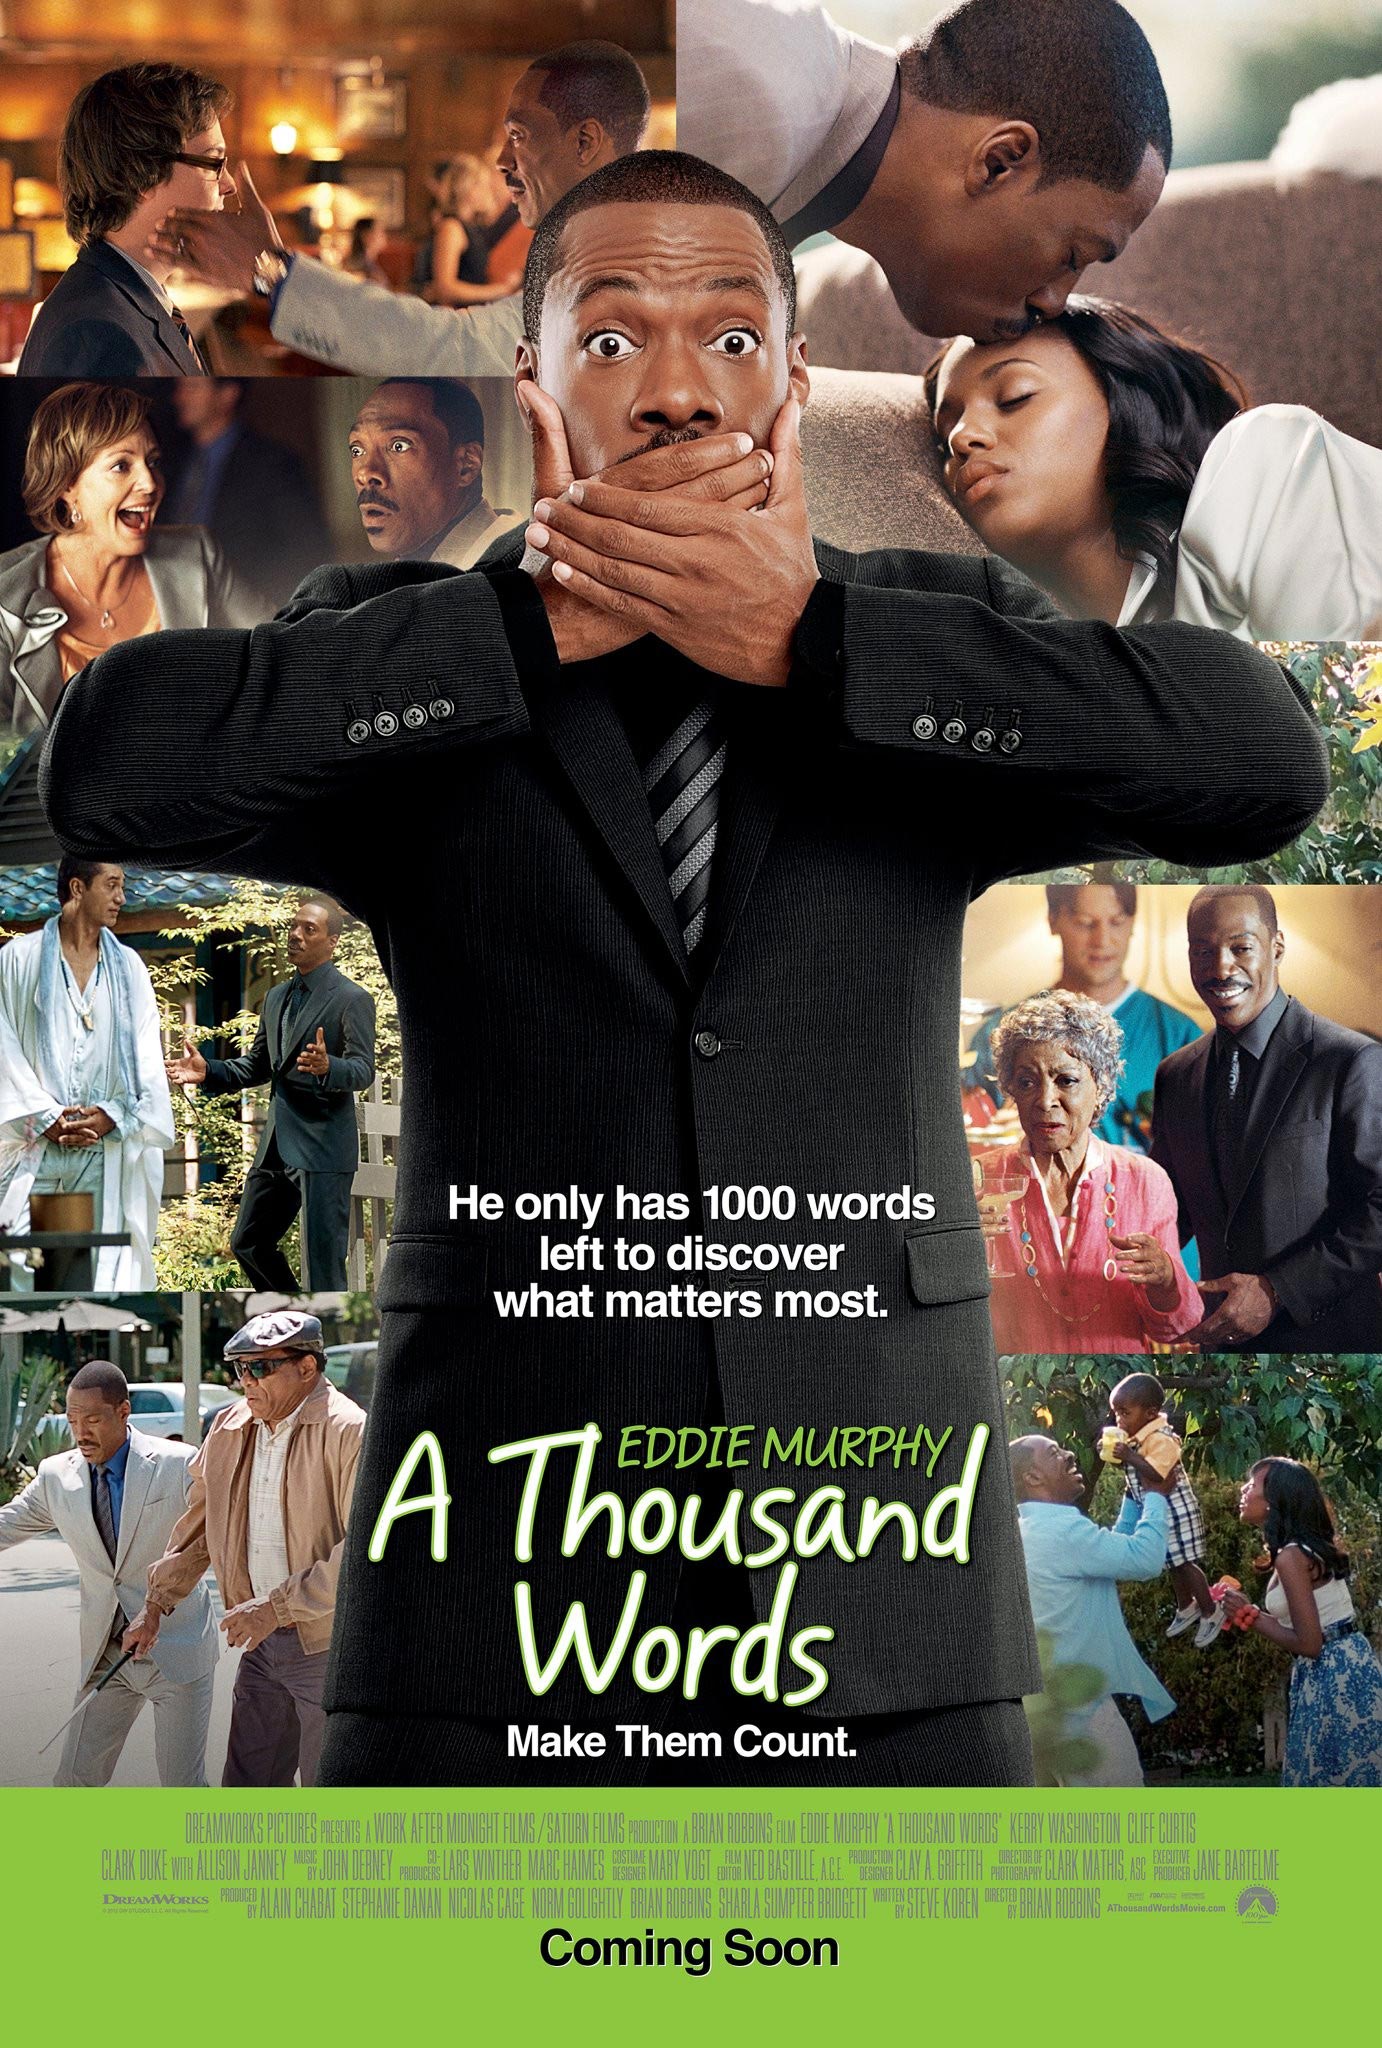 Eddie Murphy Thousand Words Movie